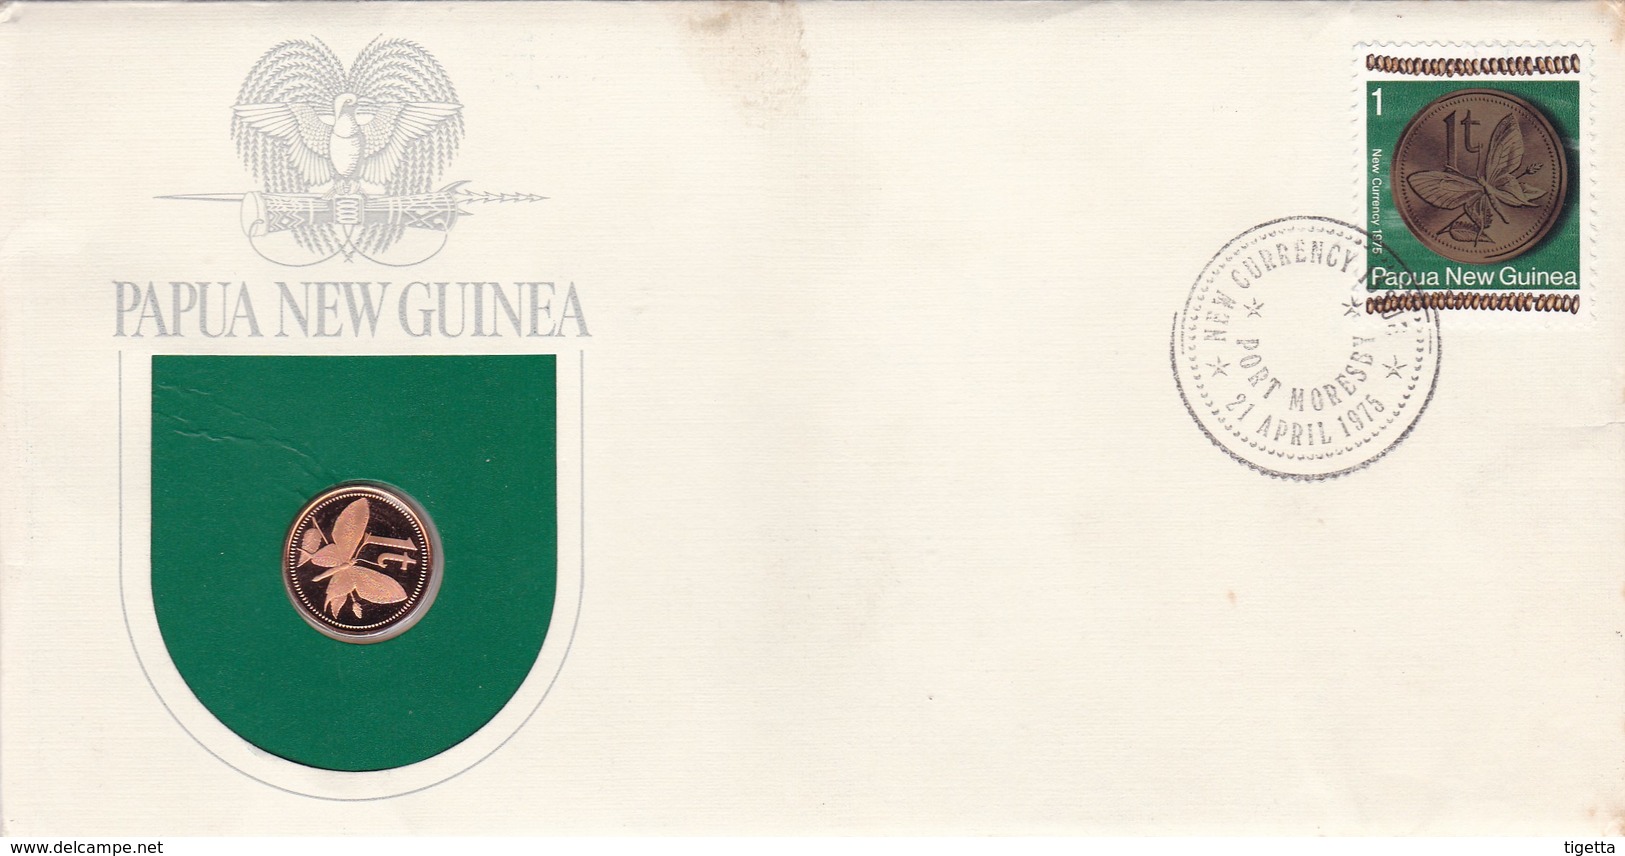 PAPUA NEW GUINEA SERIE MONETE CON ANNULLO PAPUA NUOVA GUINEA ANNO 1975 - Papúa Nueva Guinea